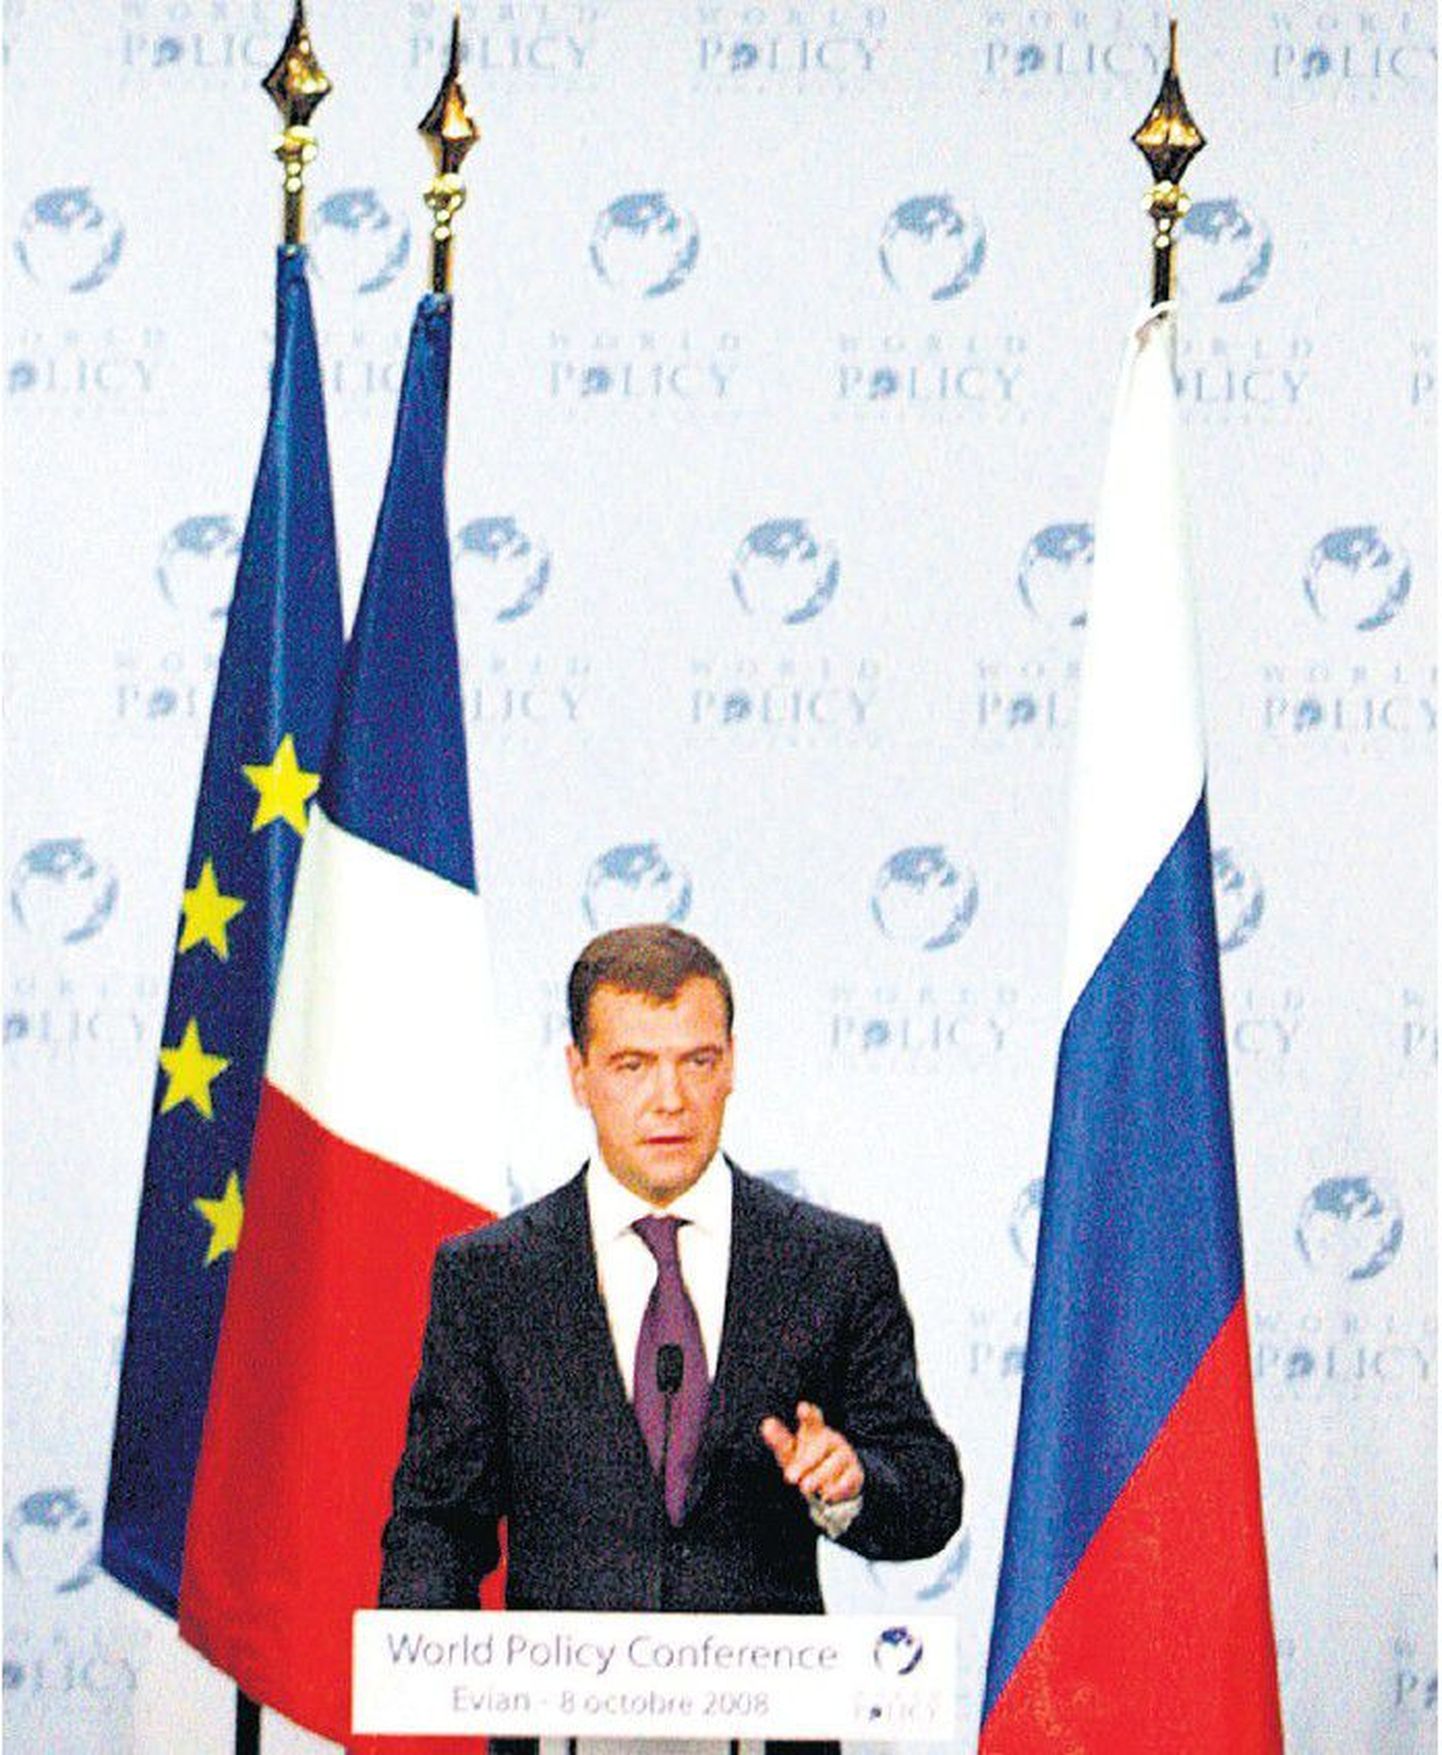 Venemaa president Dmitri Medvedev esinemas 8. oktoobril rahvusvahelisel poliitikakonverentsil Evianis Prantsusmaal.